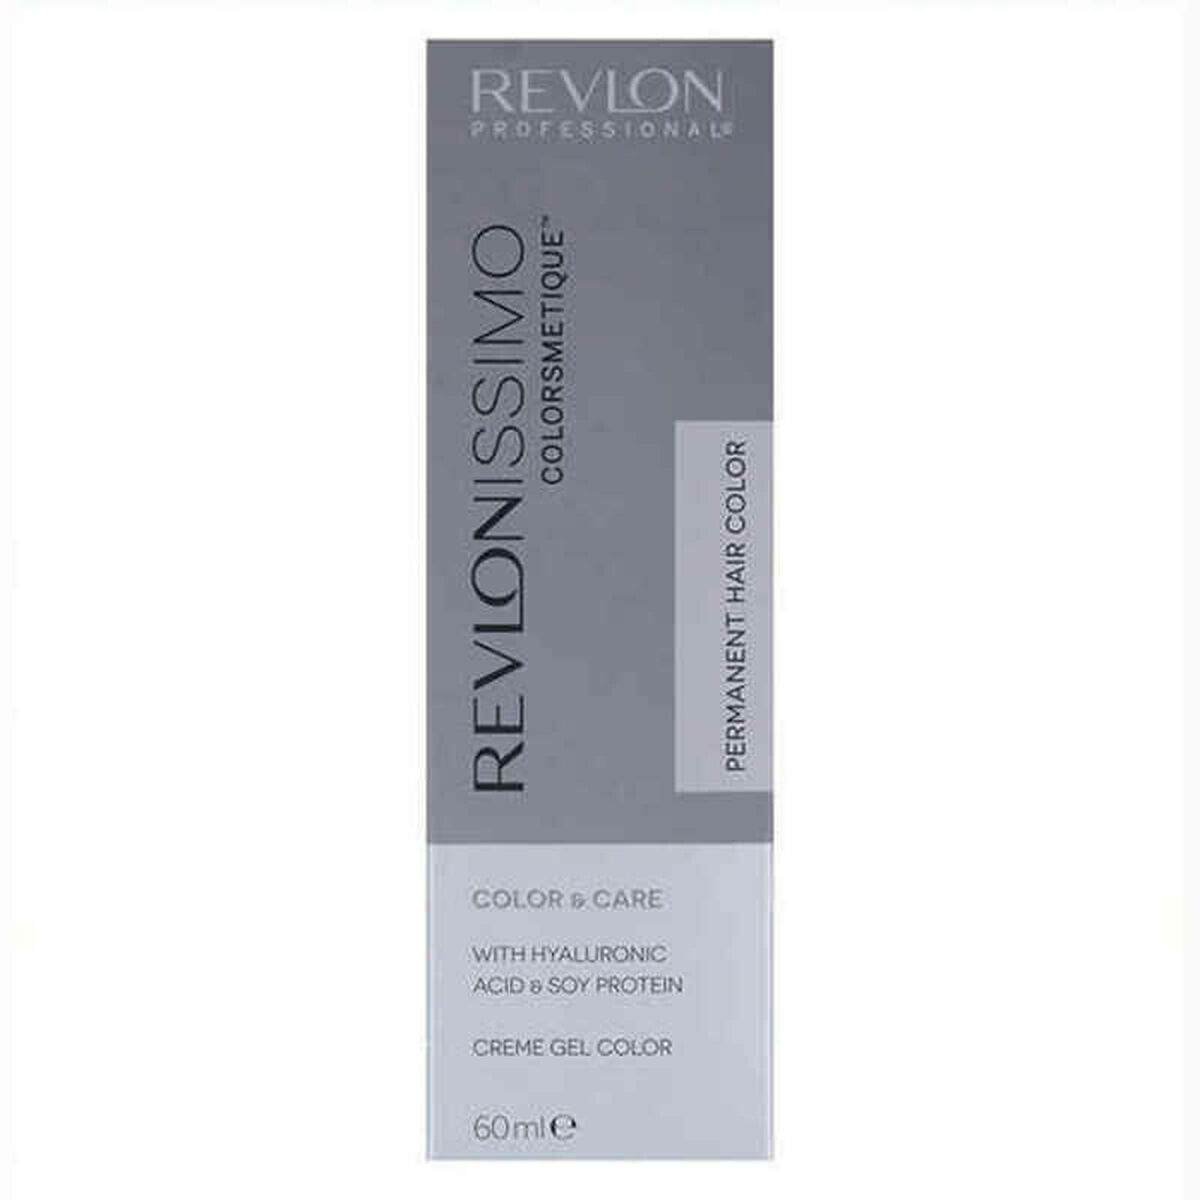 Постоянная краска Revlonissimo Colorsmetique Revlon BF-8007376026025_Vendor Nº 9.21 (60 ml)